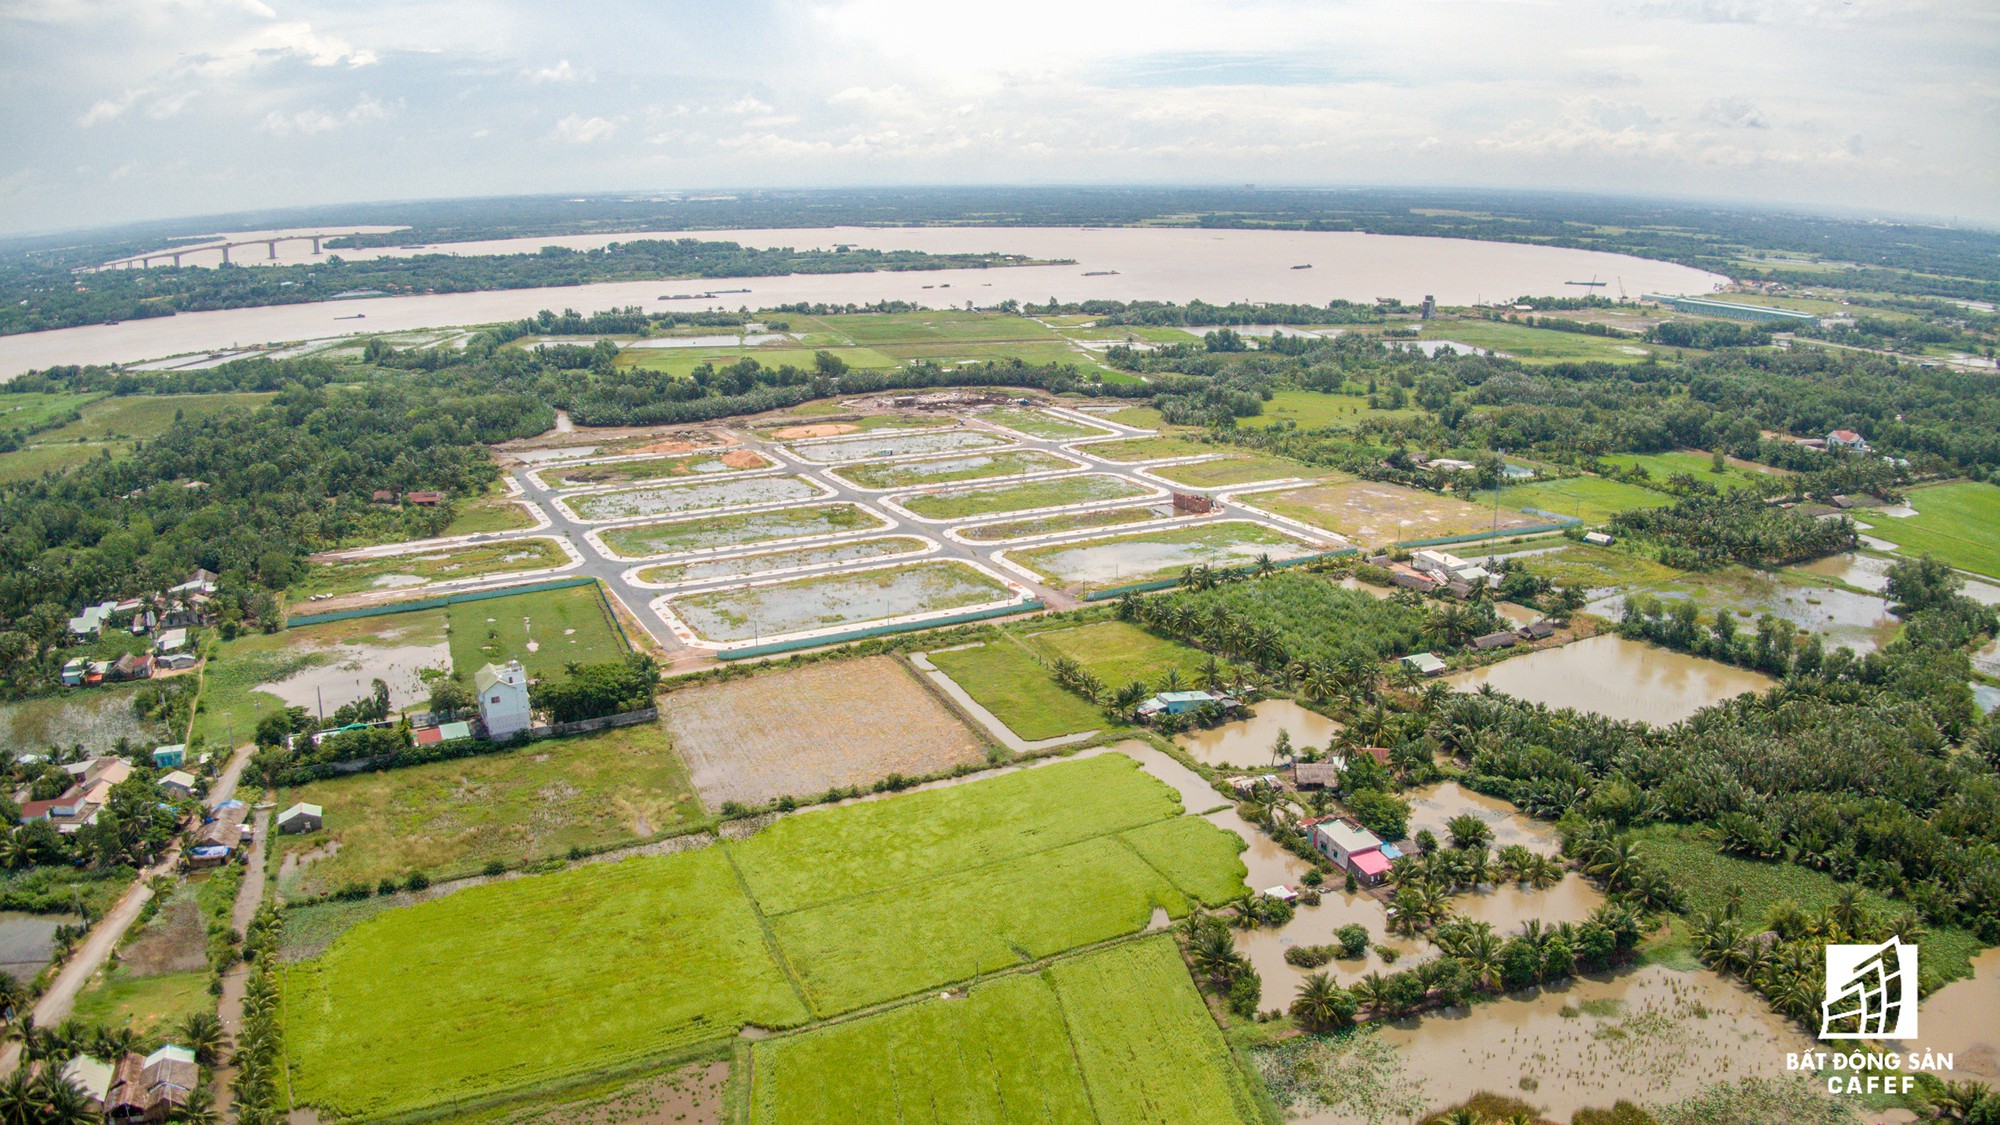 Đồng Nai chốt phương án xây cầu Cát Lái nối Nhơn Trạch và TP.HCM, bức tranh thị trường bất động sản thay đổi chóng mặt - Ảnh 20.